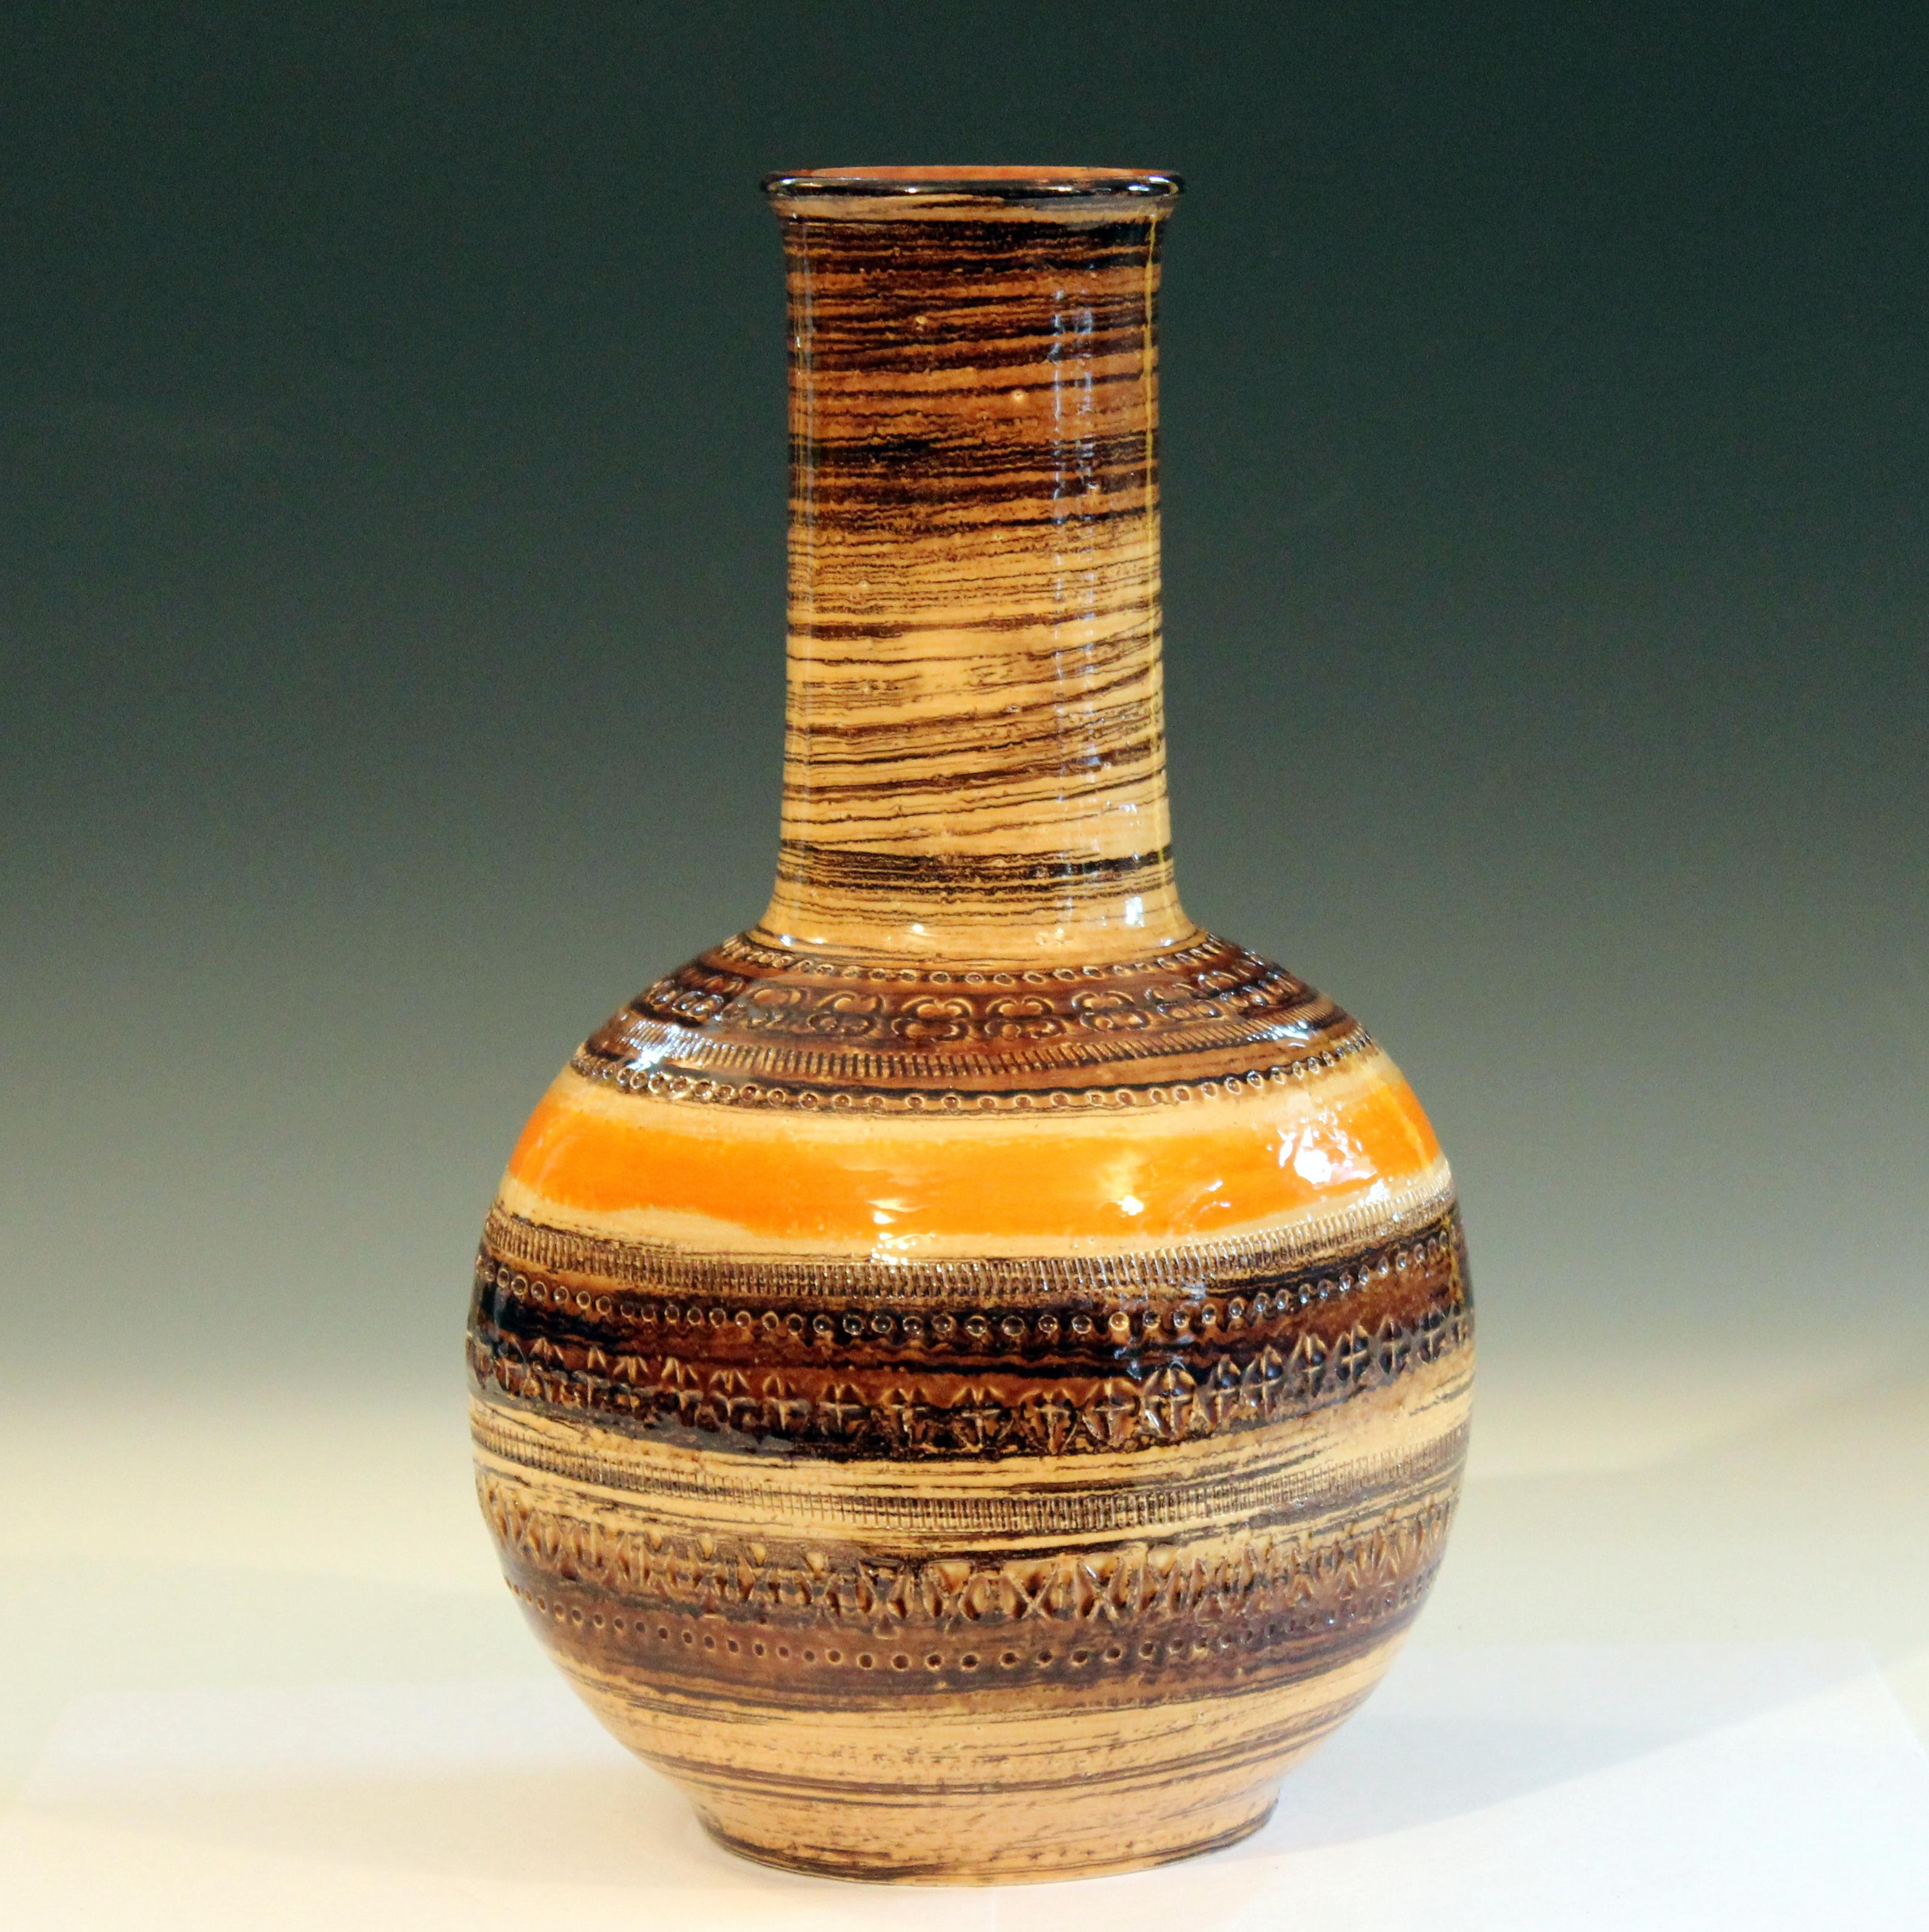 Large Bitossi vase in Sahara glazes with impressed Rimini decoration, circa 1960s. Measures: 14